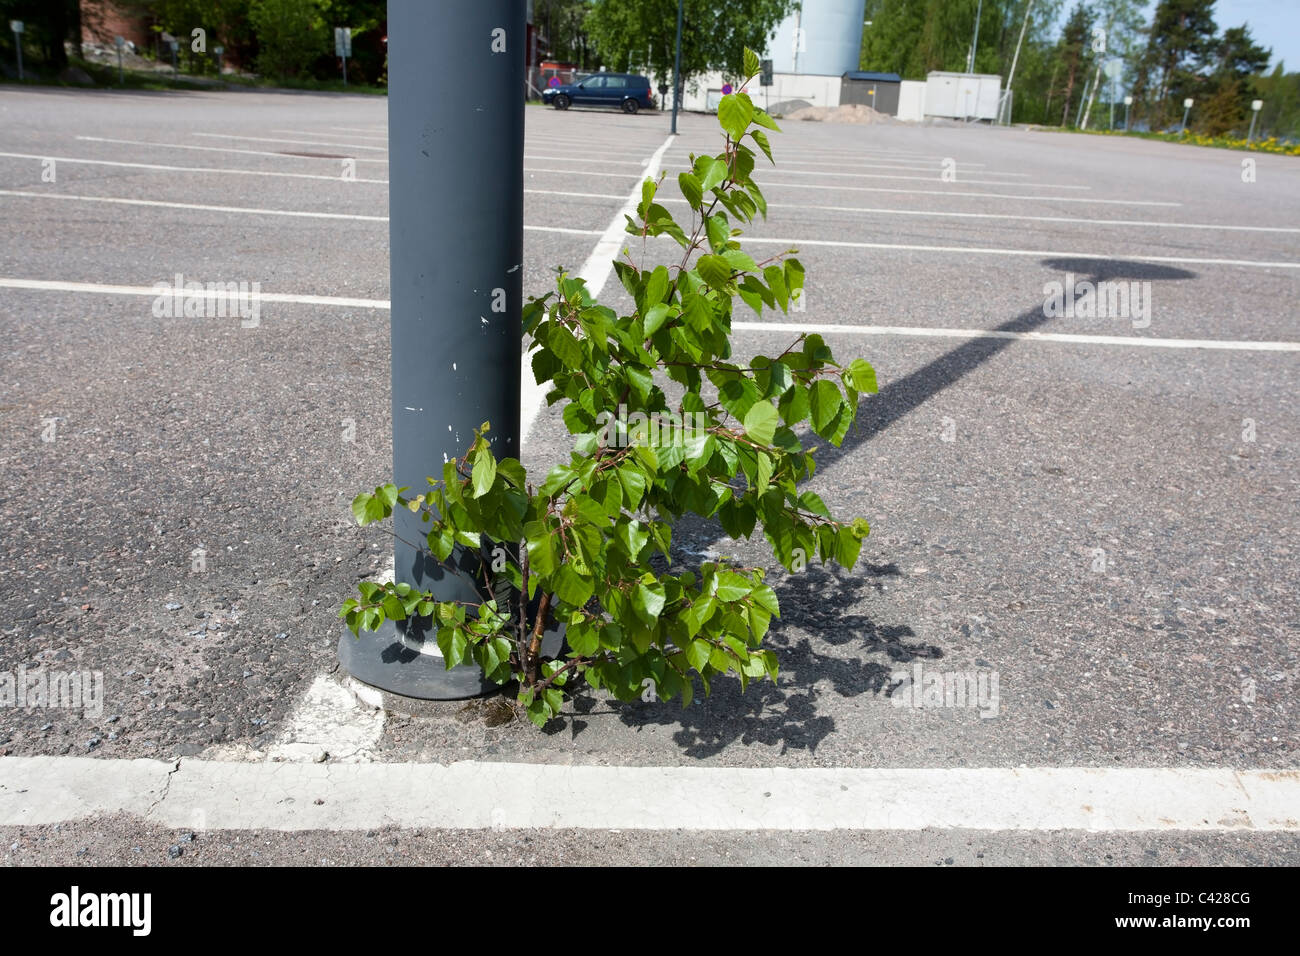 La croissance des gaulis de bouleau sur stationnement, Finlande Banque D'Images